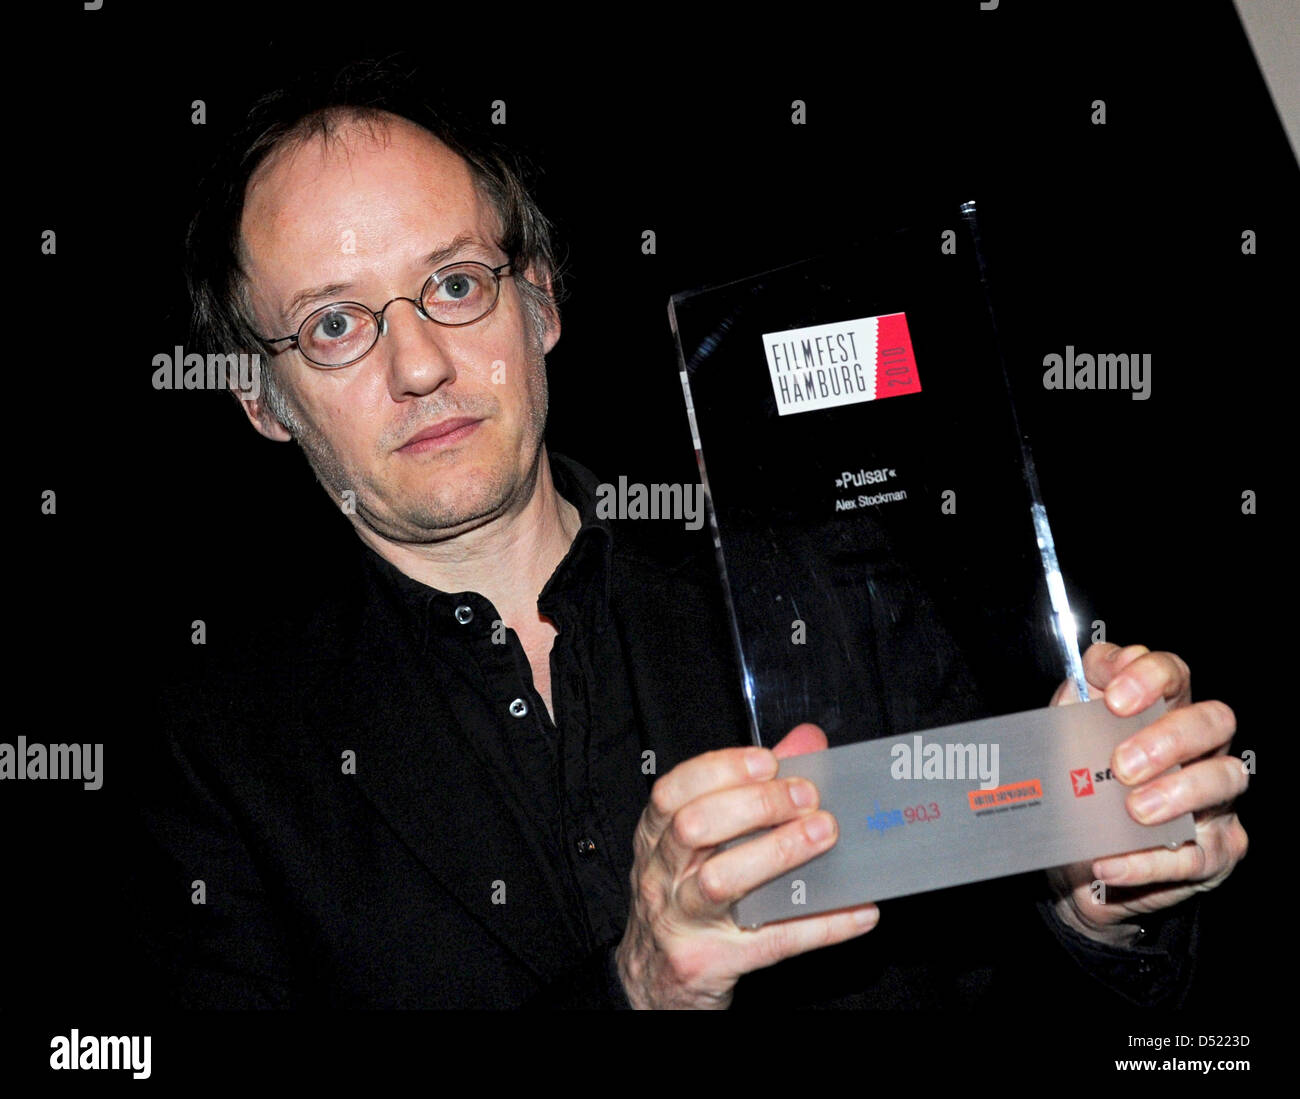 Direttore tedesco Alex Stockmann sorrisi con il suo 'Amburgo critica al diciottesimo Filmfest Hamburg a Amburgo, Germania, 09 ottobre 2010. Stockmann ha ricevuto il premio per il suo film "pulsar". Foto: Angelika Warmuth Foto Stock